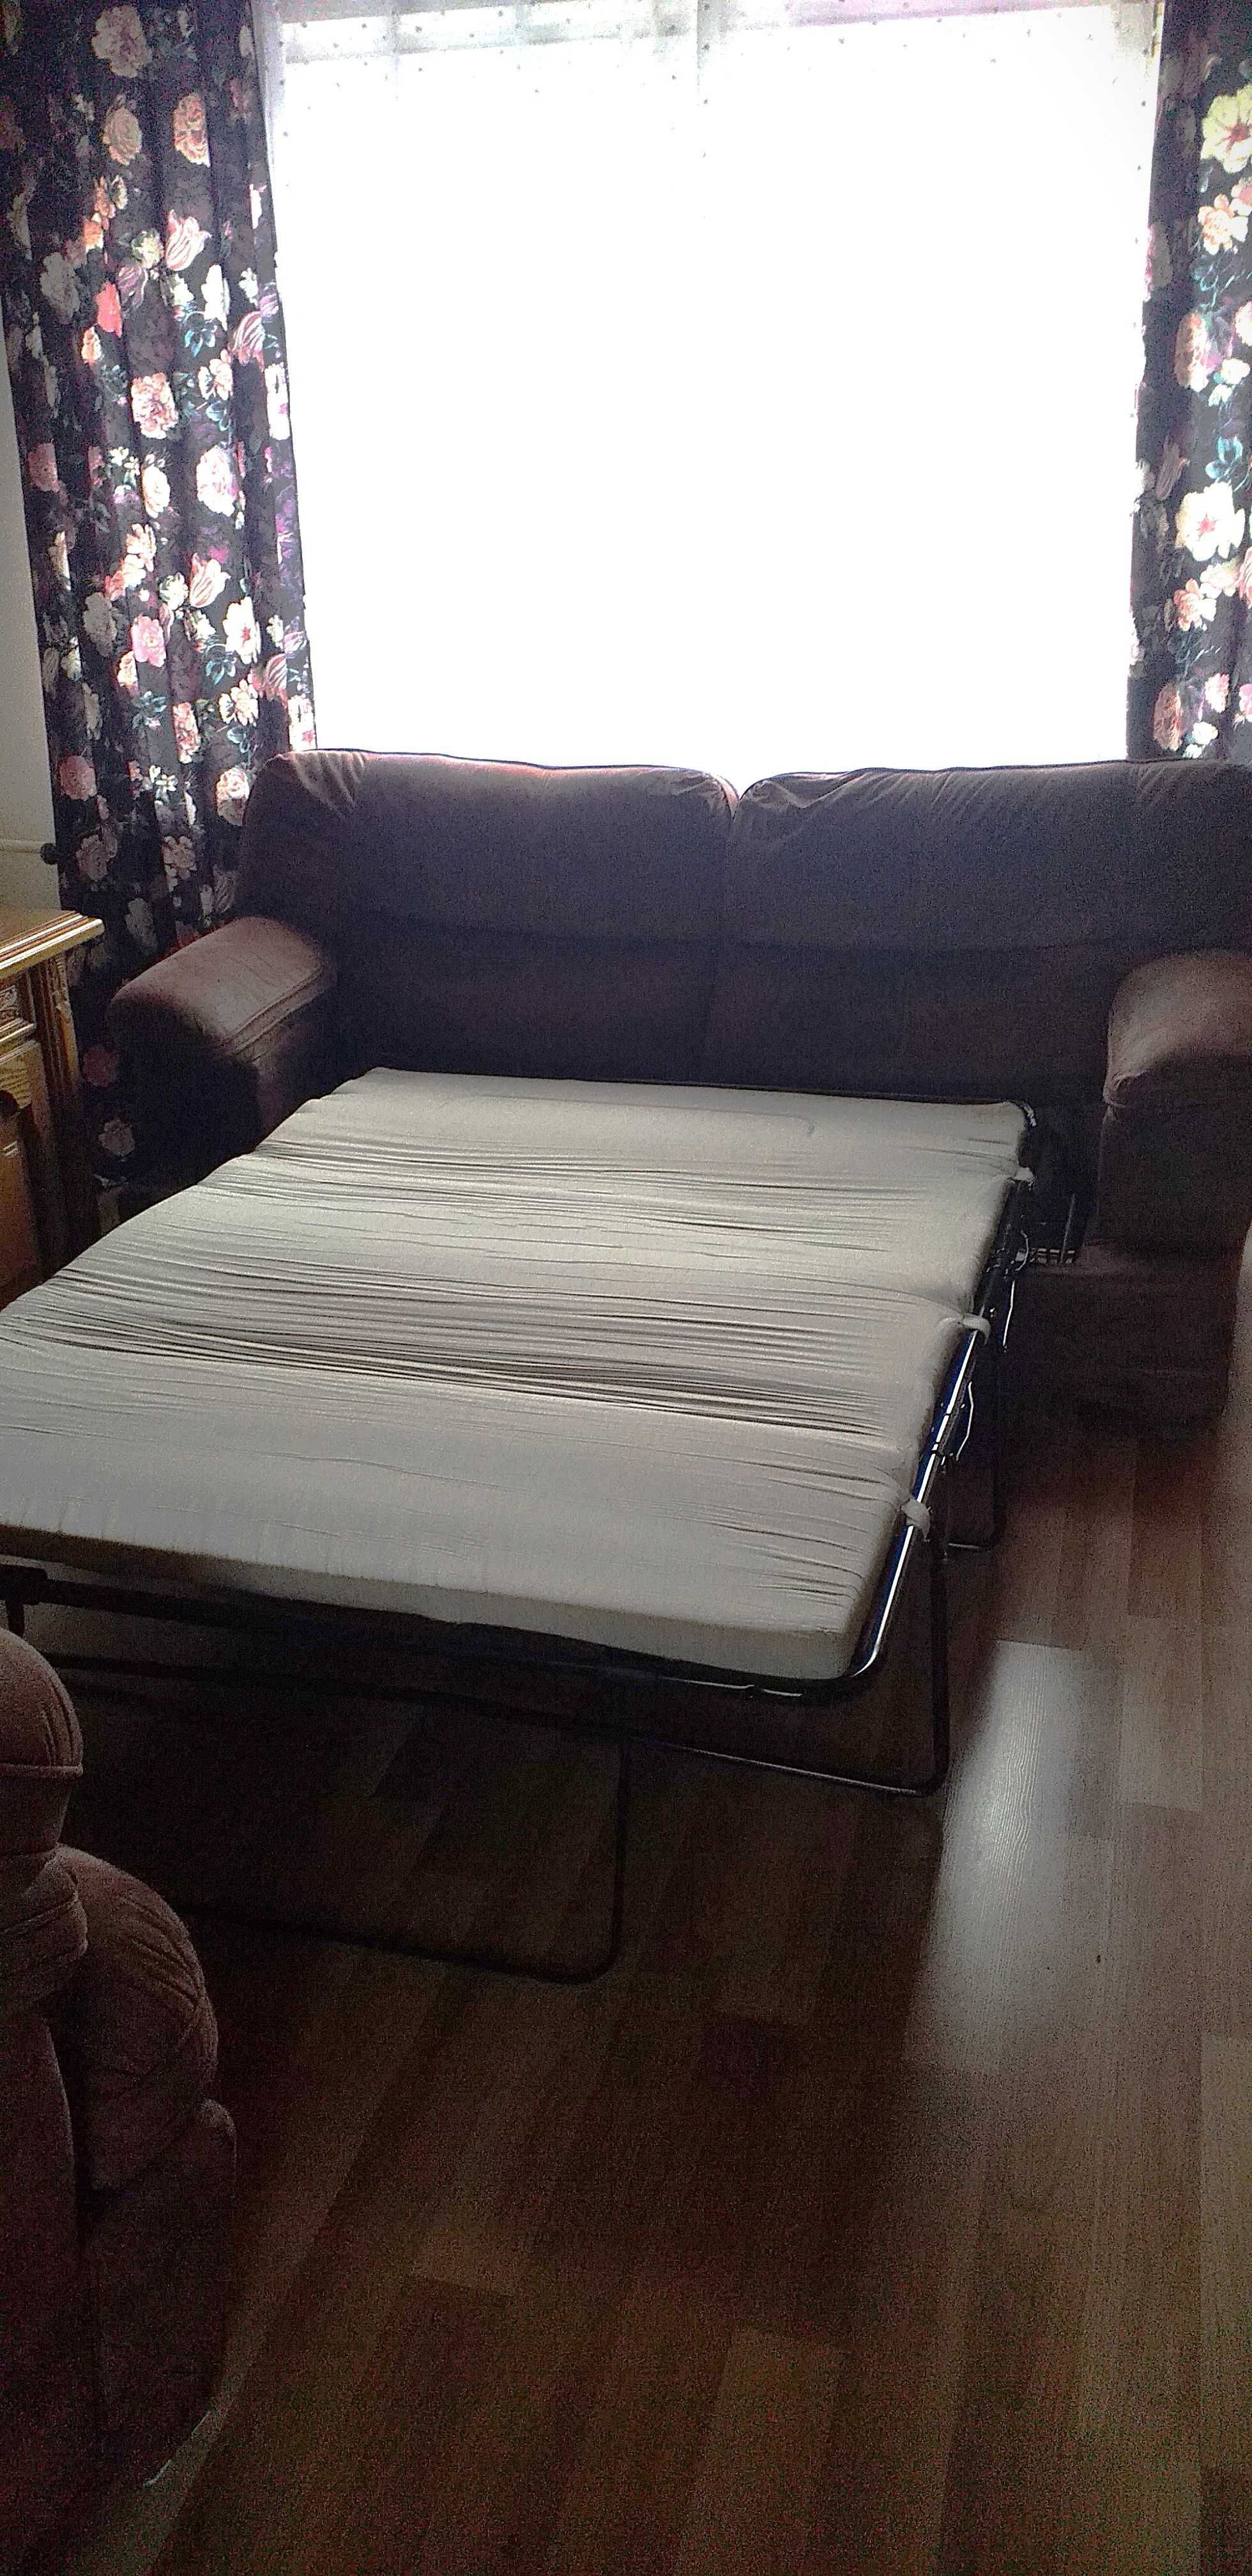 Sofa rozkladana z mozliwoscia spania + dwa fotele